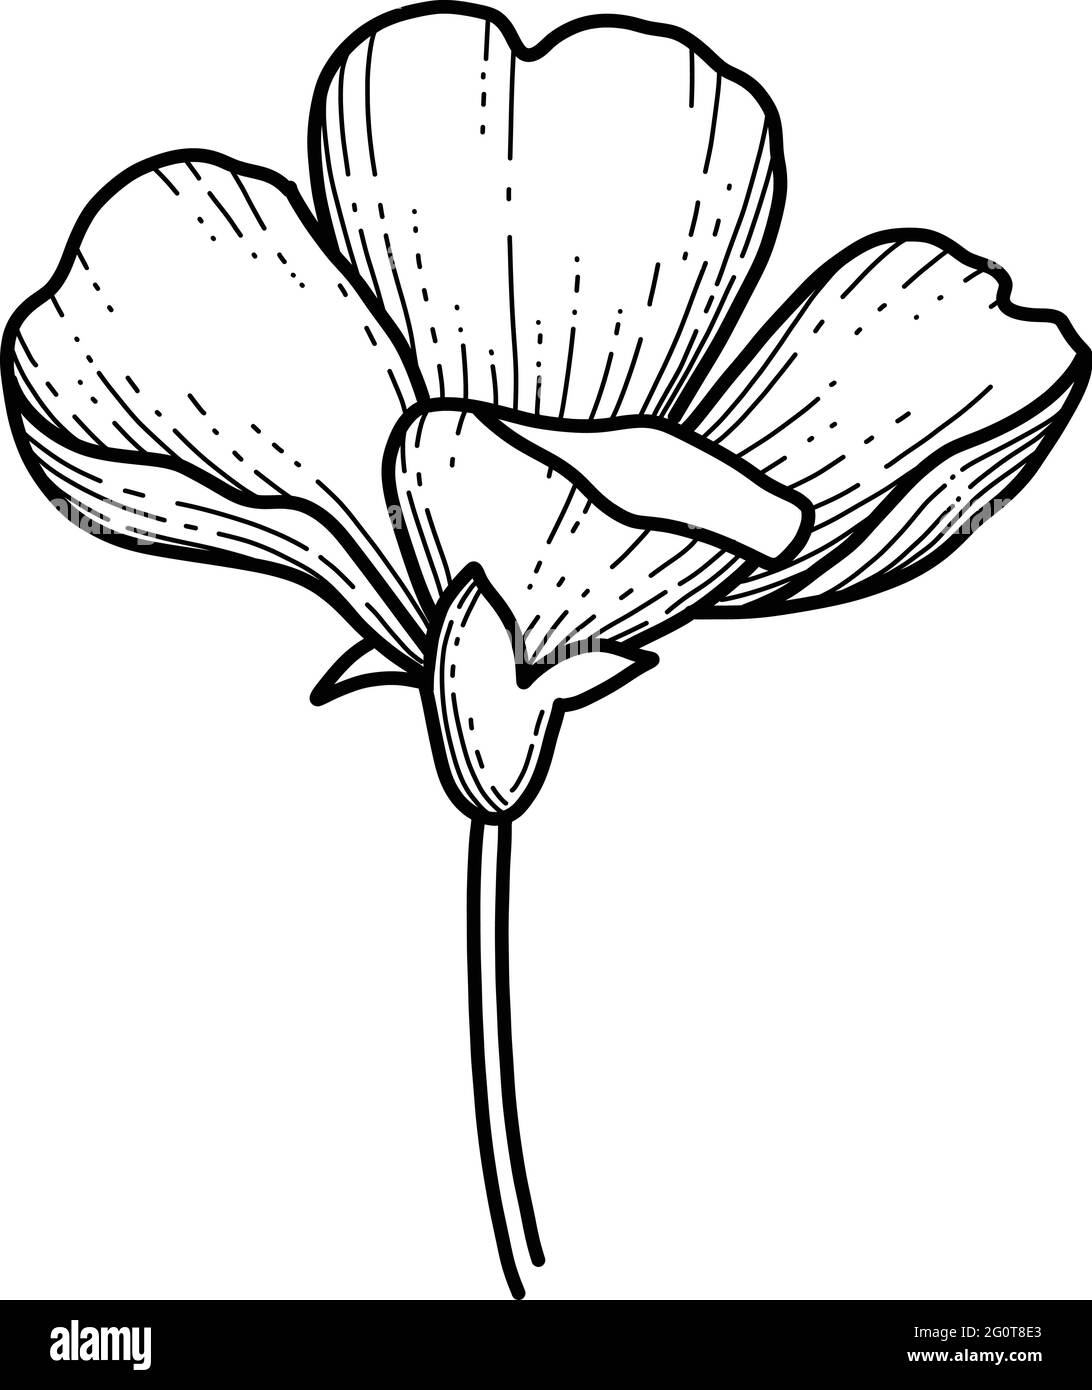 Main libre Sakura fleur vecteur, belle ligne art Peach fleur isoler sur fond blanc. Fleur du japon de printemps. Style dessiné à la main réaliste Illustration de Vecteur